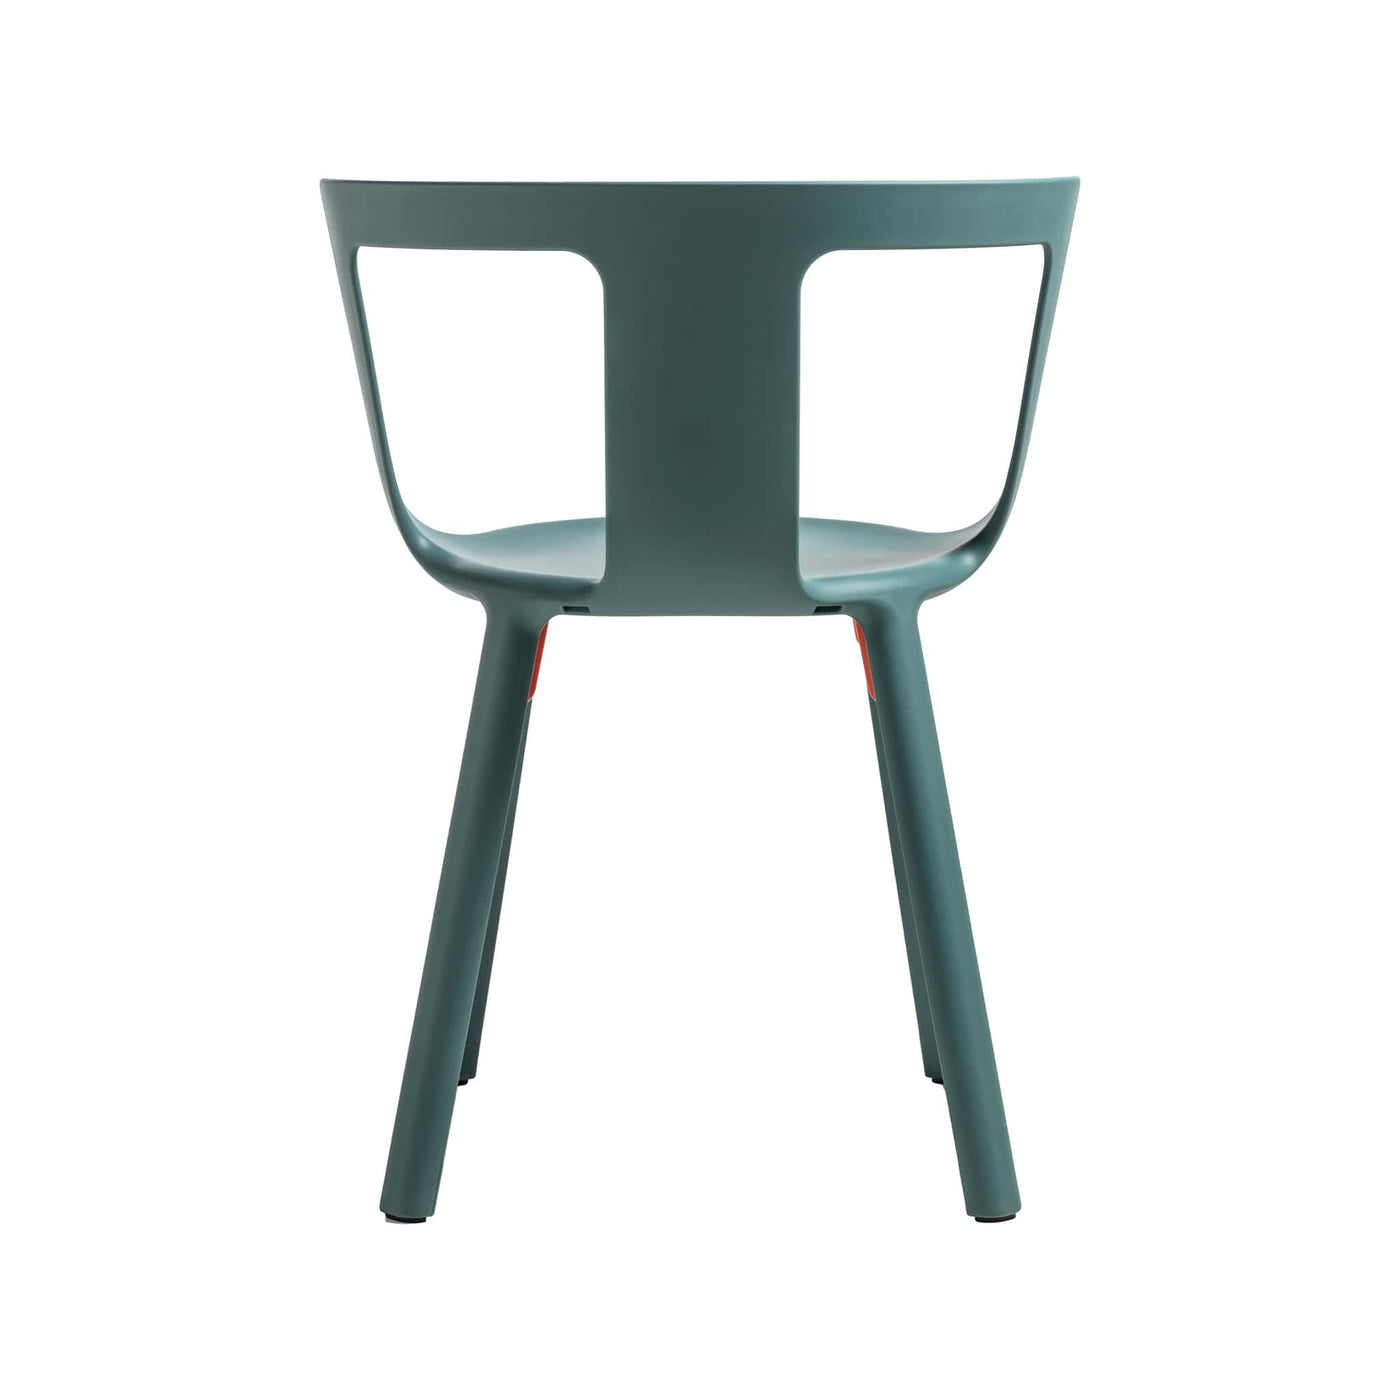 La chaise FLA de TOOU incarne la fusion parfaite entre forme et fonction, avec un design minimaliste et empilable idéal pour une utilisation dans divers environnements.